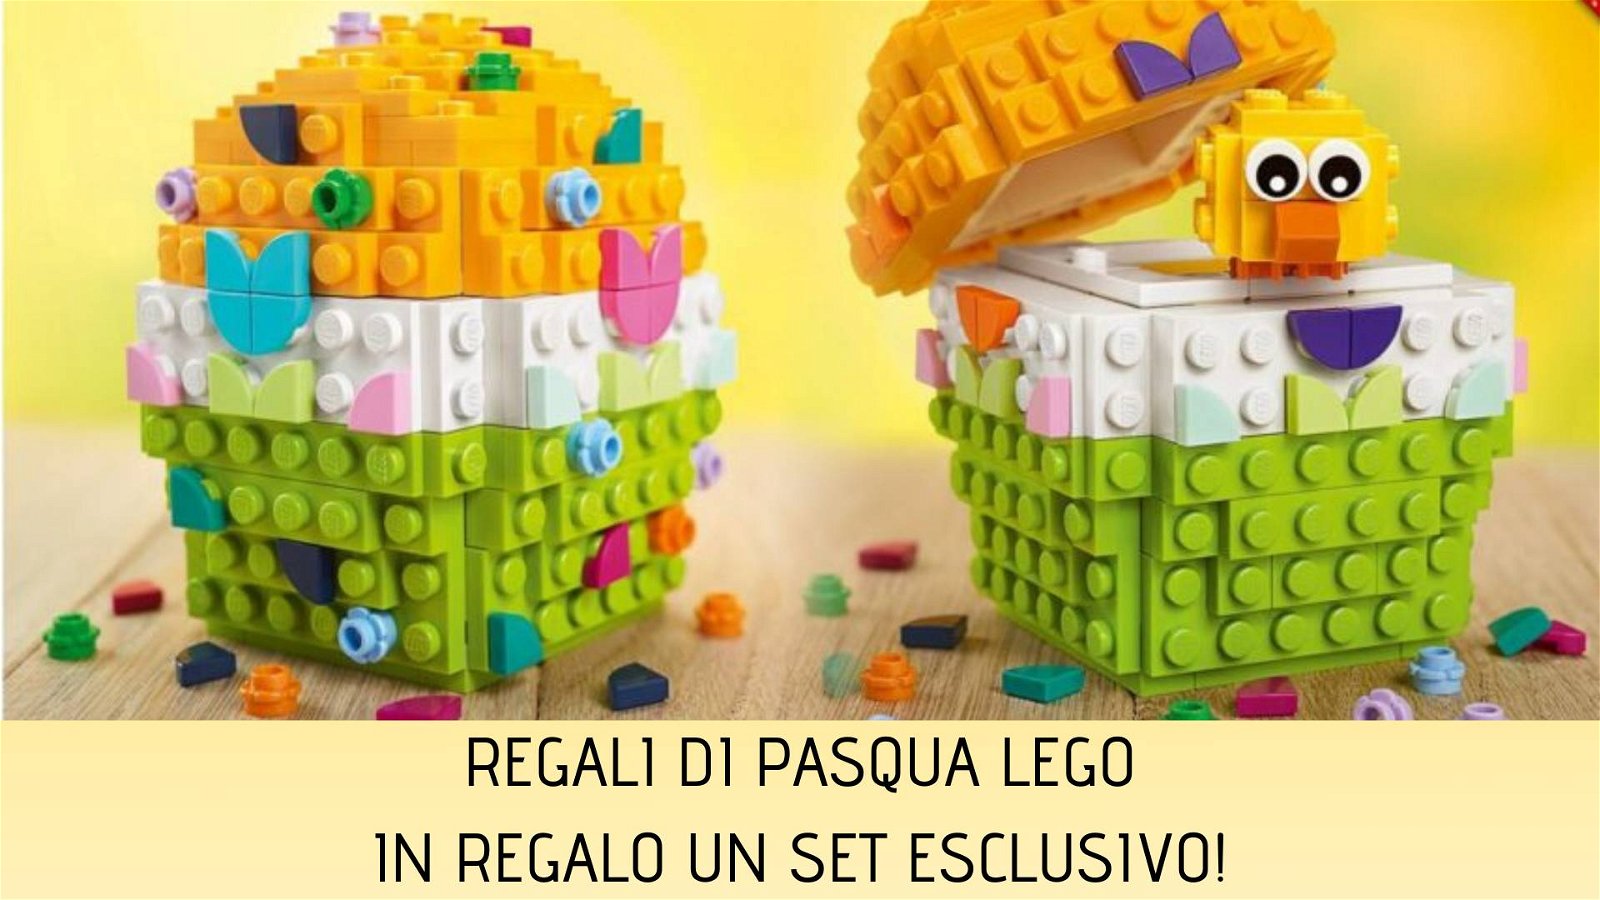 Immagine di Regali di Pasqua LEGO: acquista e ricevi in omaggio l'esclusivo Uovo di Pasqua